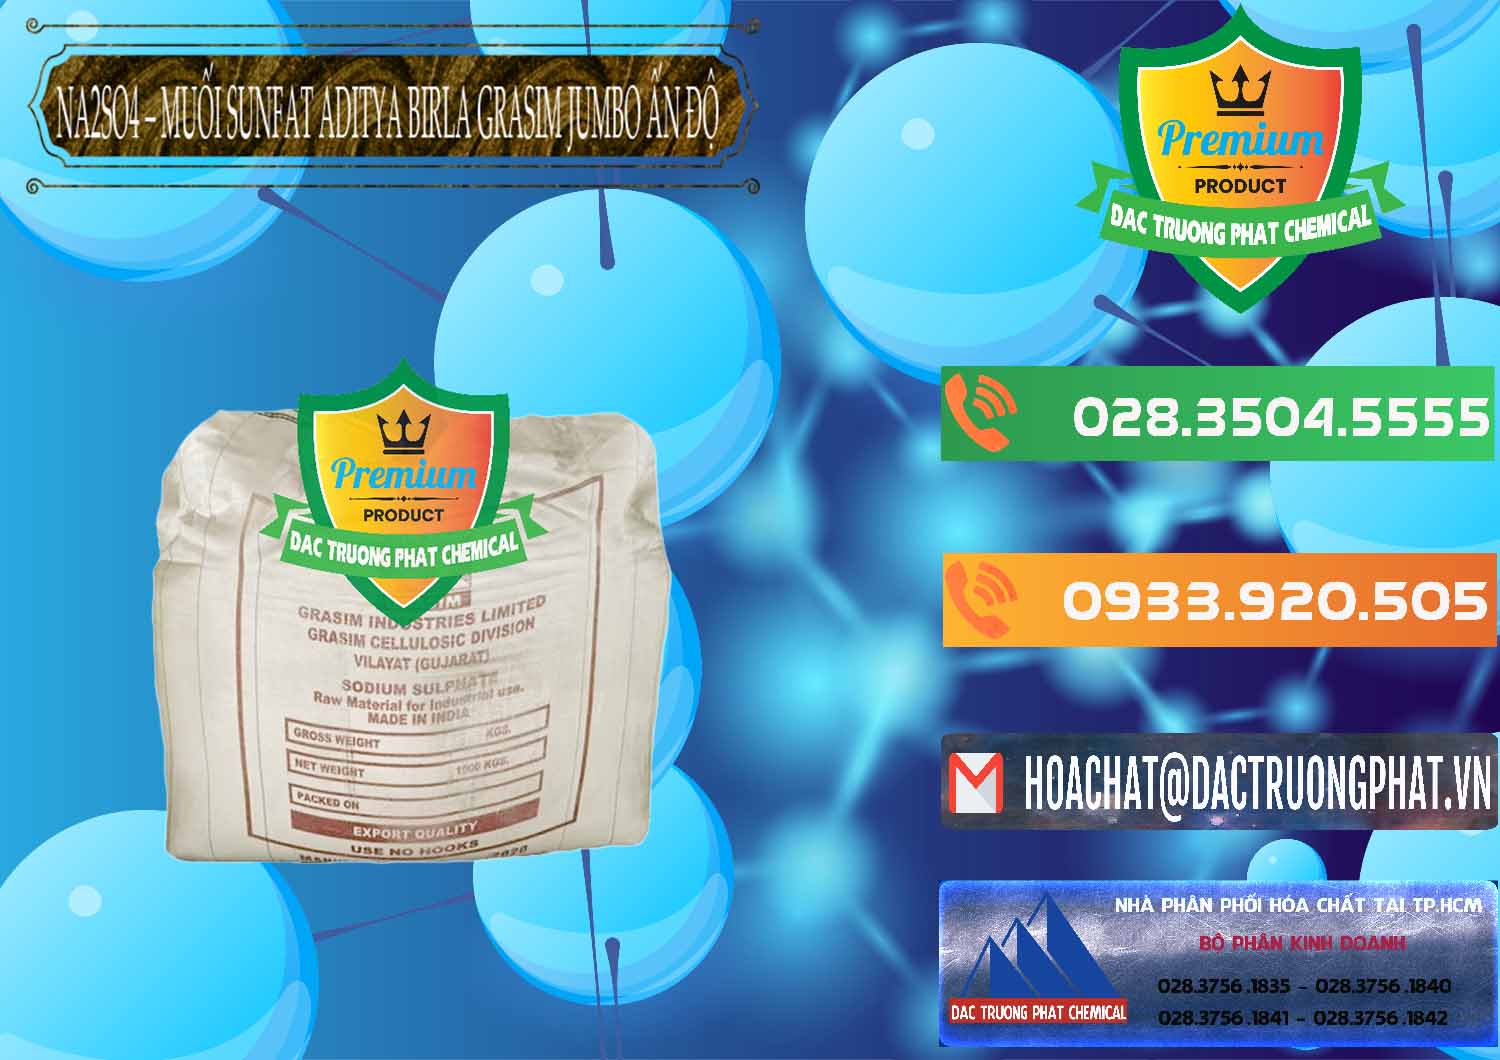 Cty chuyên bán - cung ứng Sodium Sulphate - Muối Sunfat Na2SO4 Jumbo Bành Aditya Birla Grasim Ấn Độ India - 0357 - Nhà nhập khẩu và cung cấp hóa chất tại TP.HCM - hoachatxulynuoc.com.vn